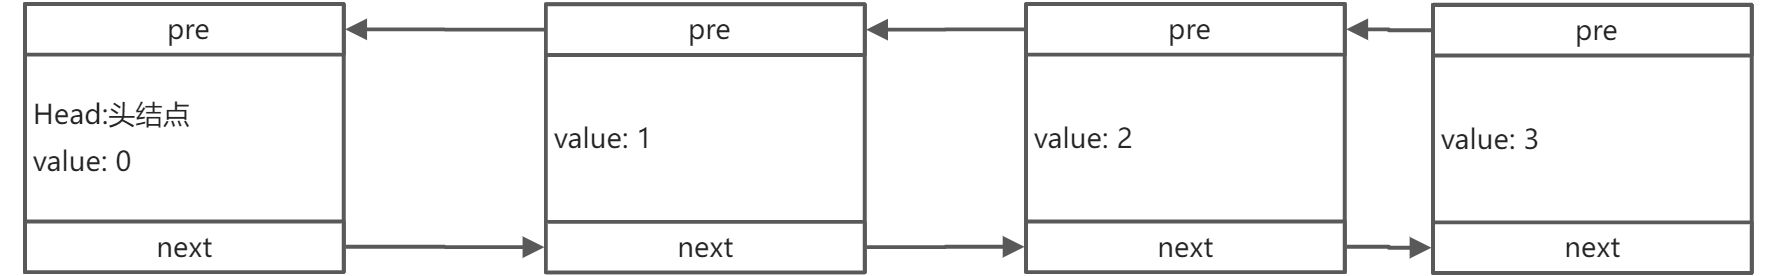 03-数据结构与算法 链表 - 图10